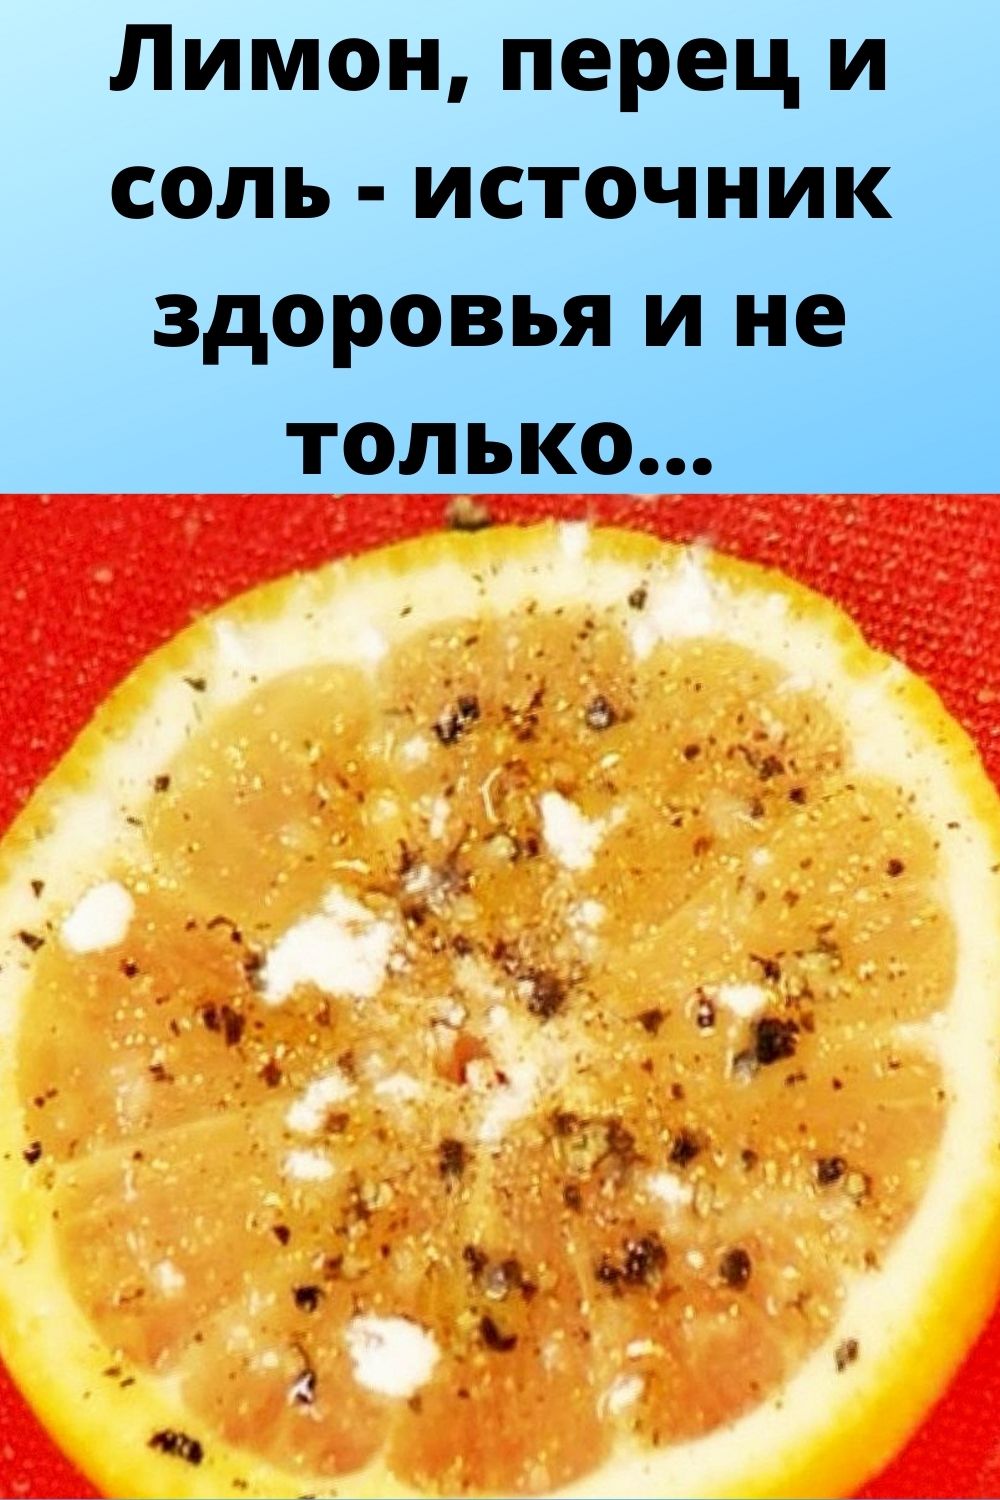 Лимон, перец и соль - источник здоровья и не только...